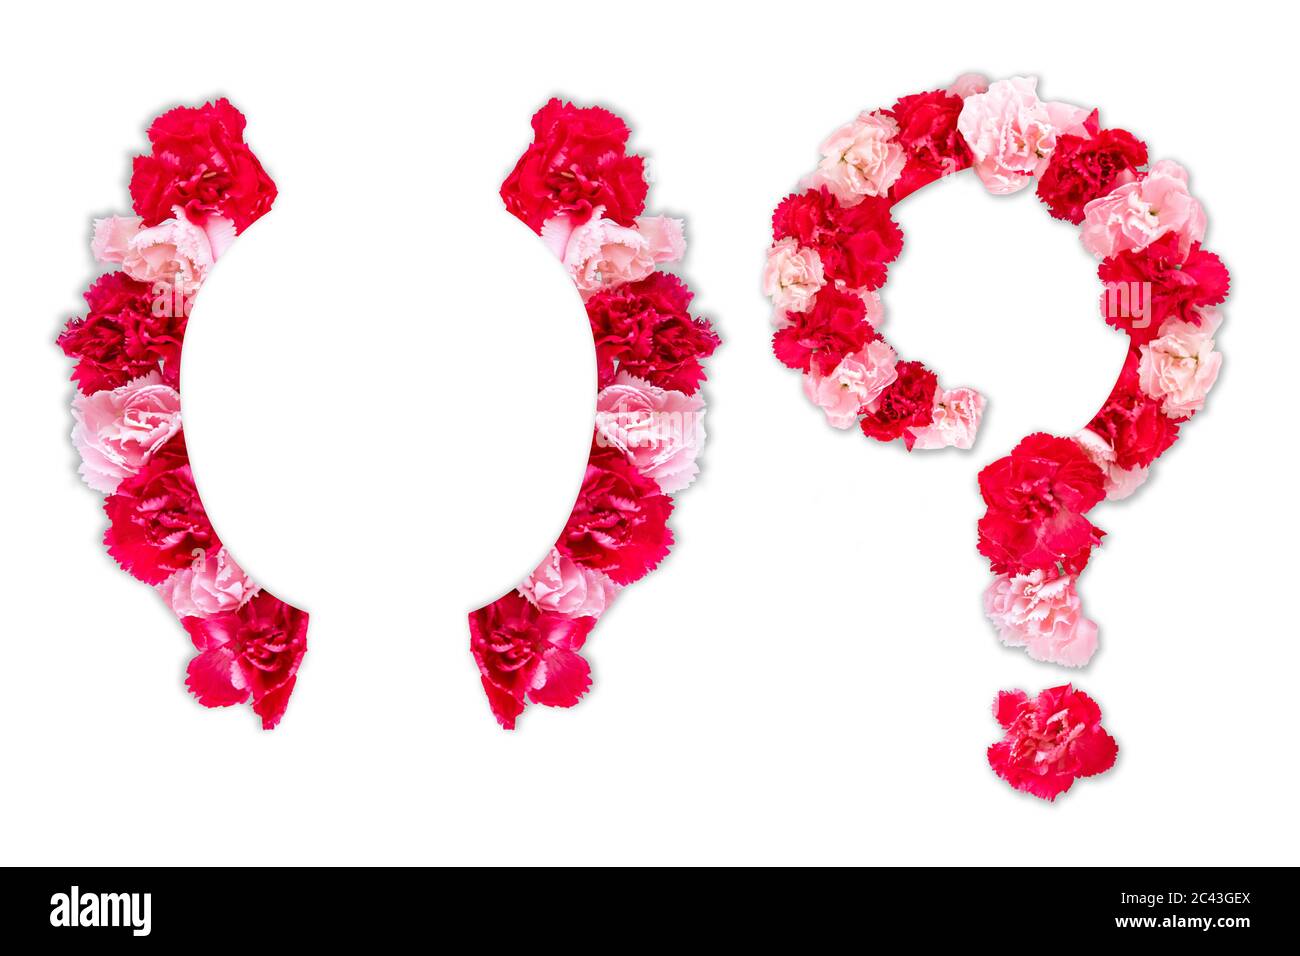 Carattere fiore per parentesi graffa, punto interrogativo (set alfabeto collezione A-Z), realizzato in fiori reali garofano rosa, colore rosso con forma tagliata in carta Foto Stock